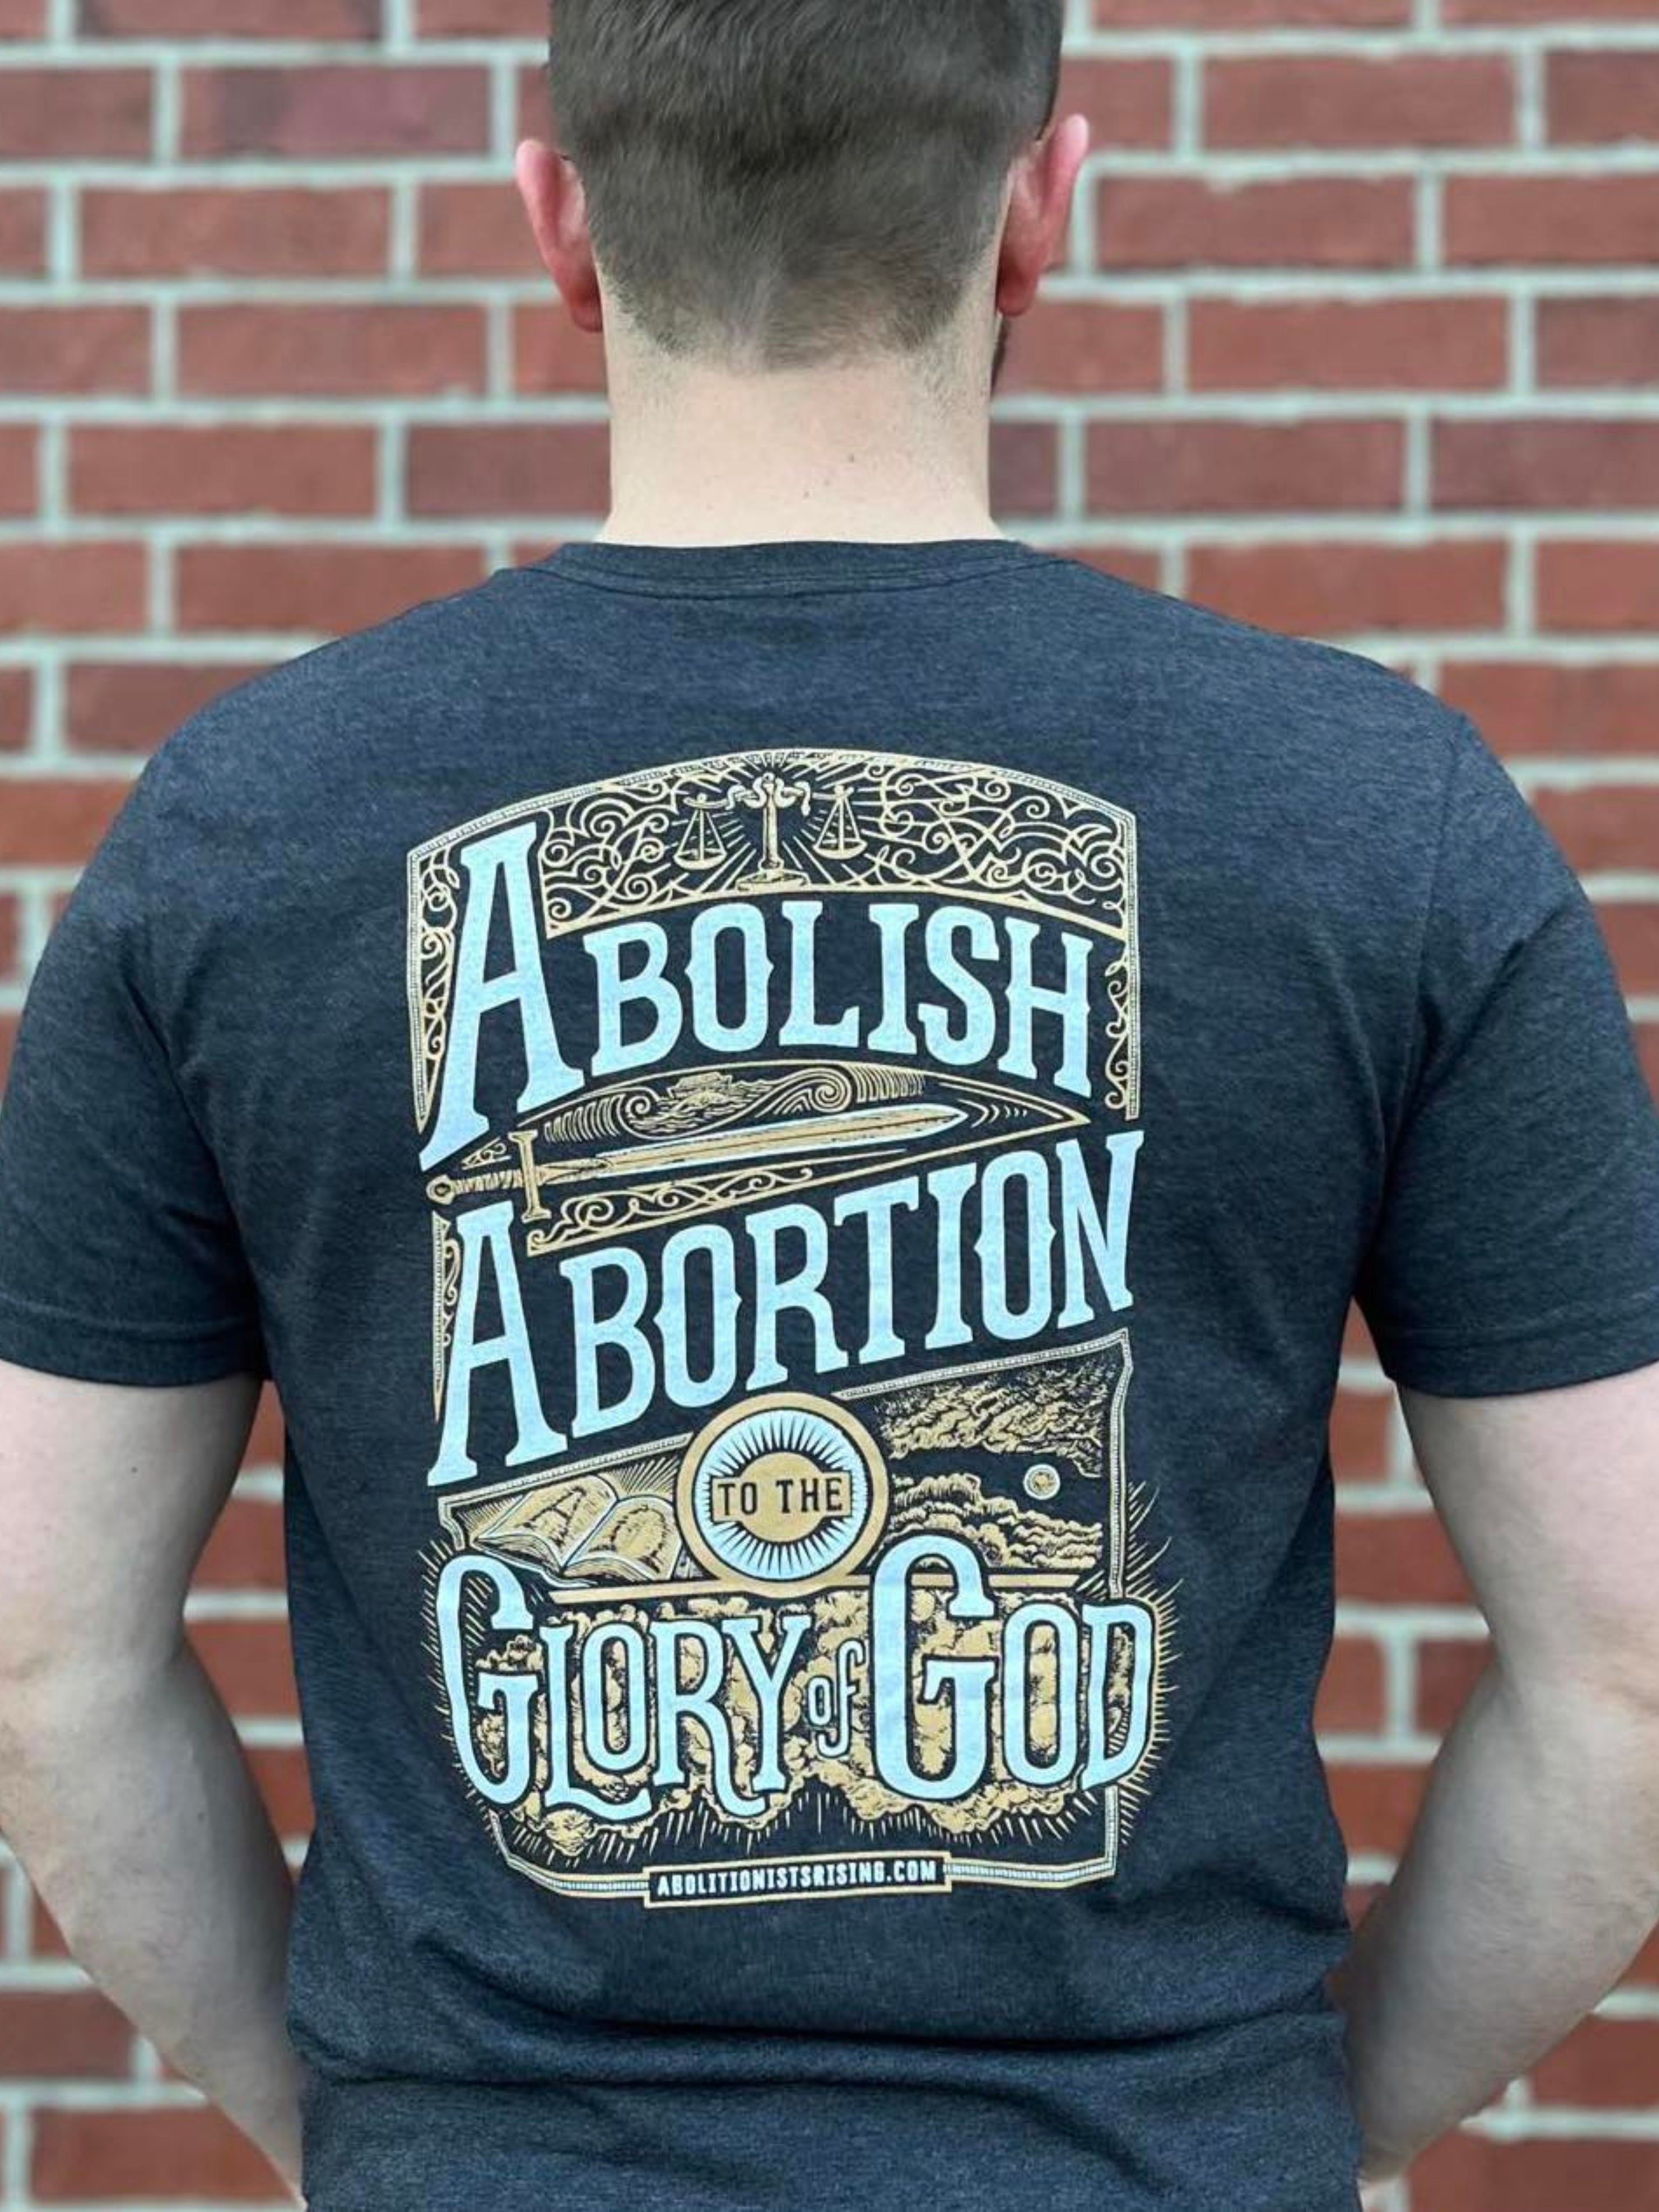 Abolish Abortion to the Glory of God T-Shirt (Unisex) - Grey & Dropcard Bundle